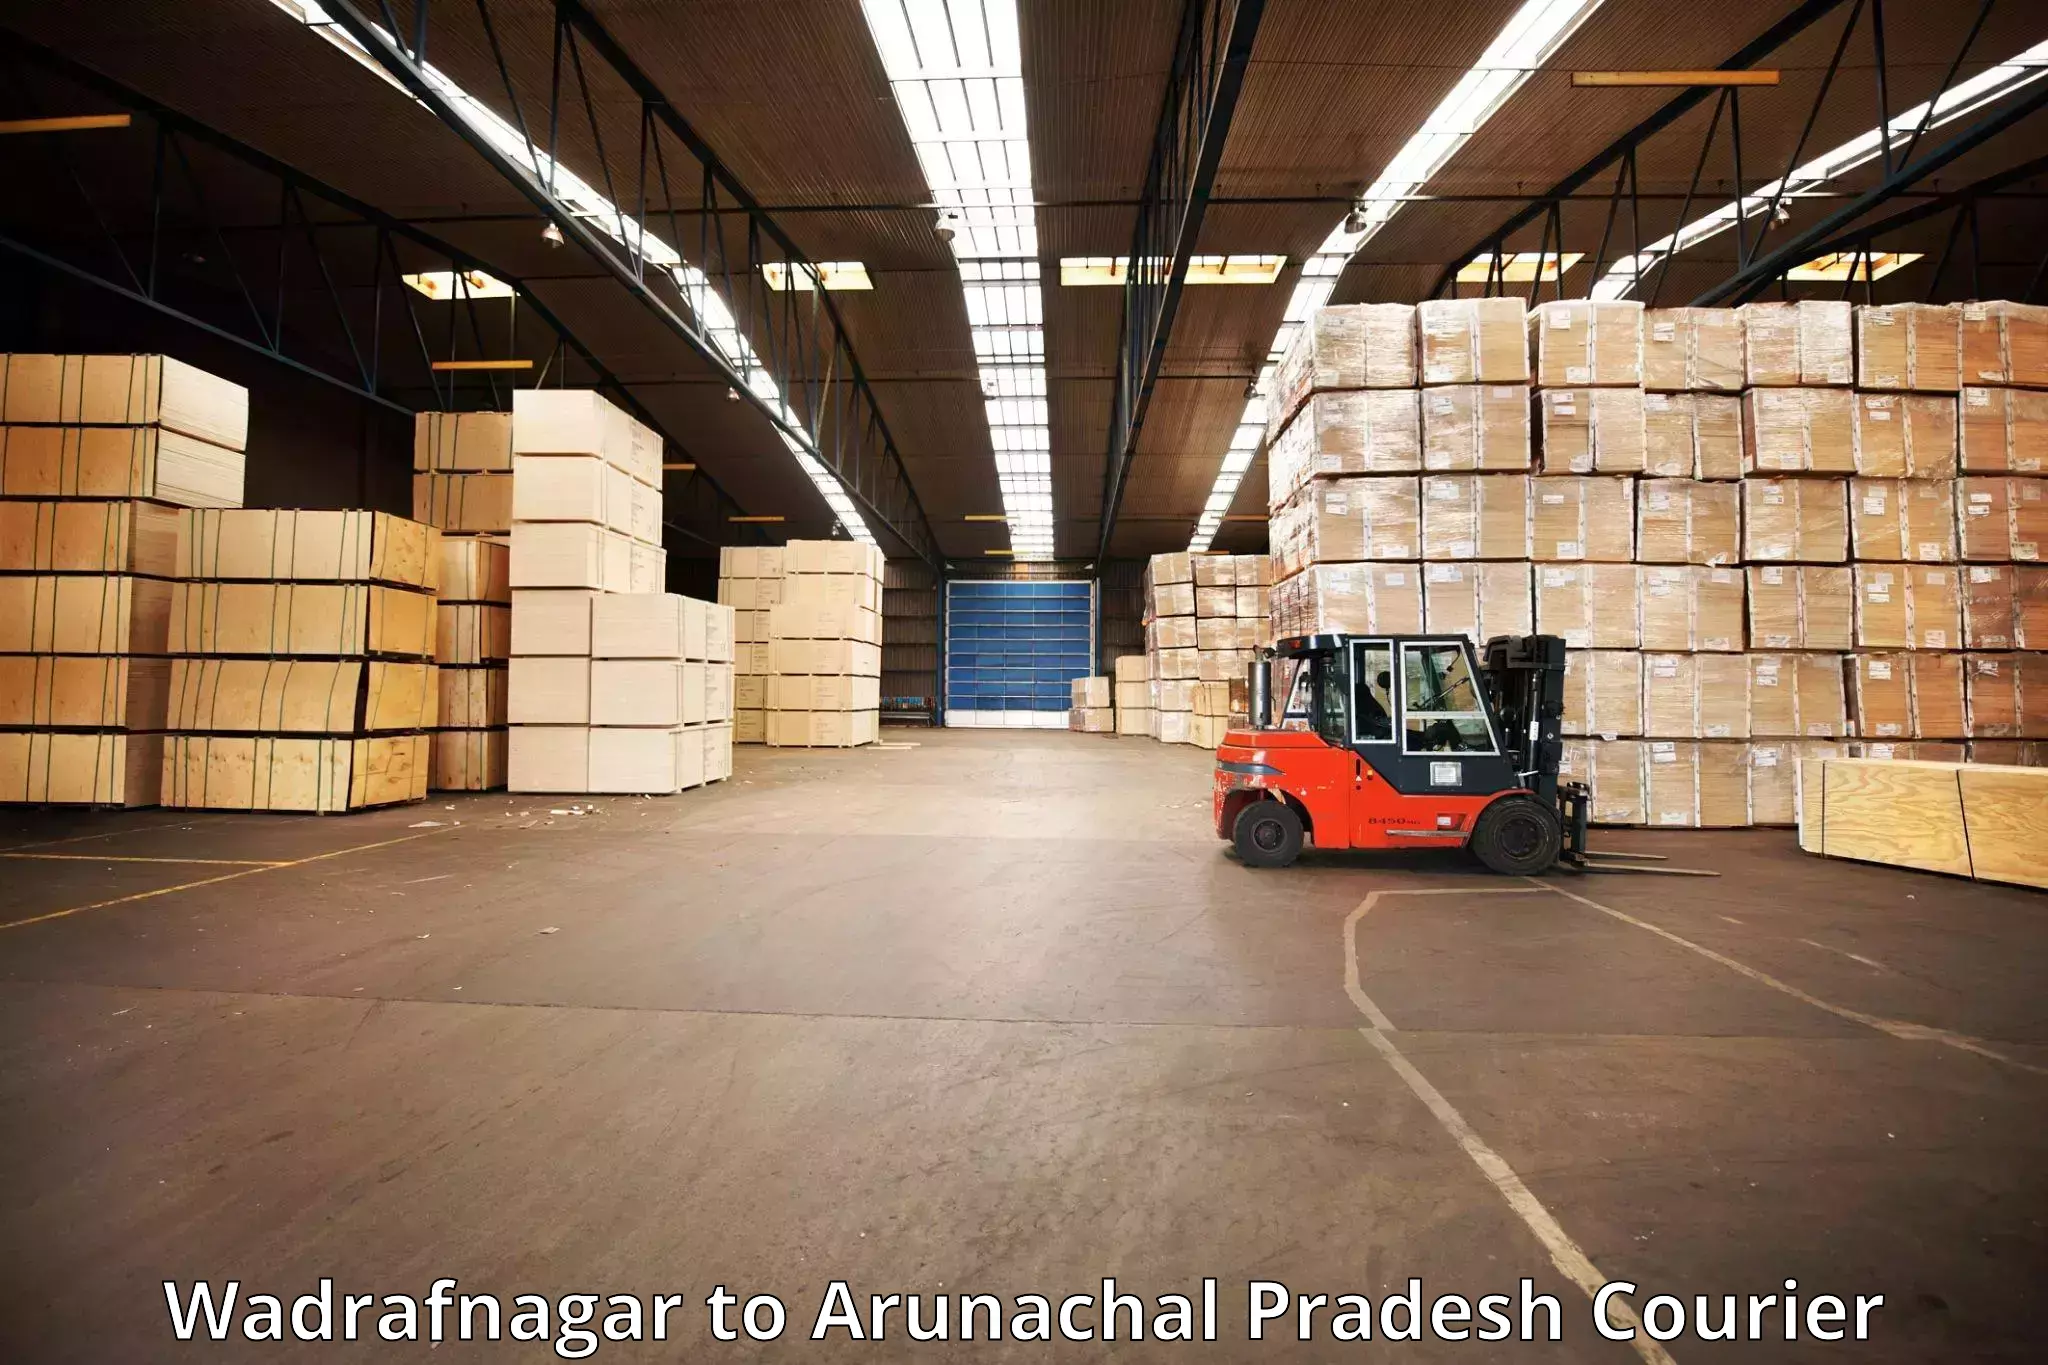 Efficient baggage courier system Wadrafnagar to Kharsang